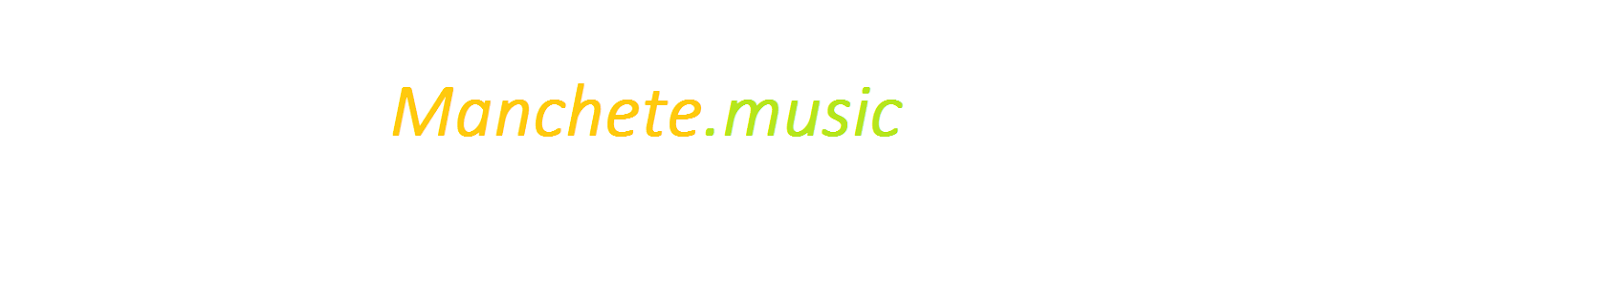 Site Oficial da Manchete Music-rk.com.br